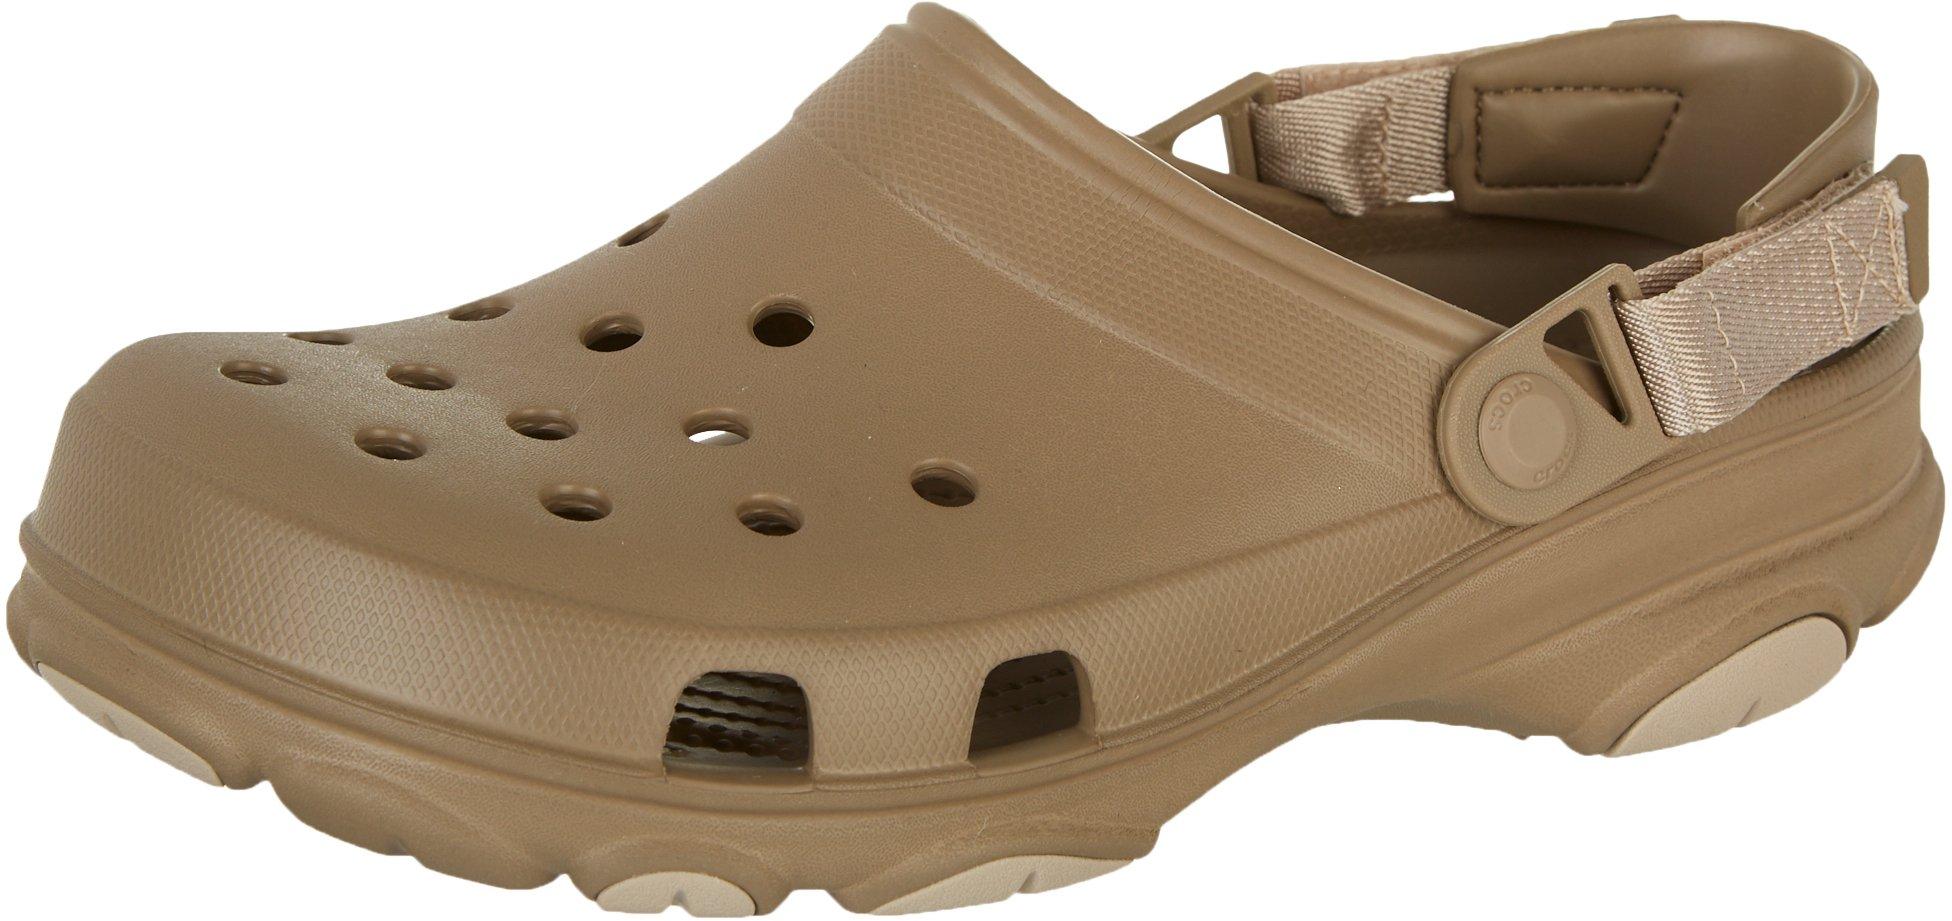 crocs solid clogs